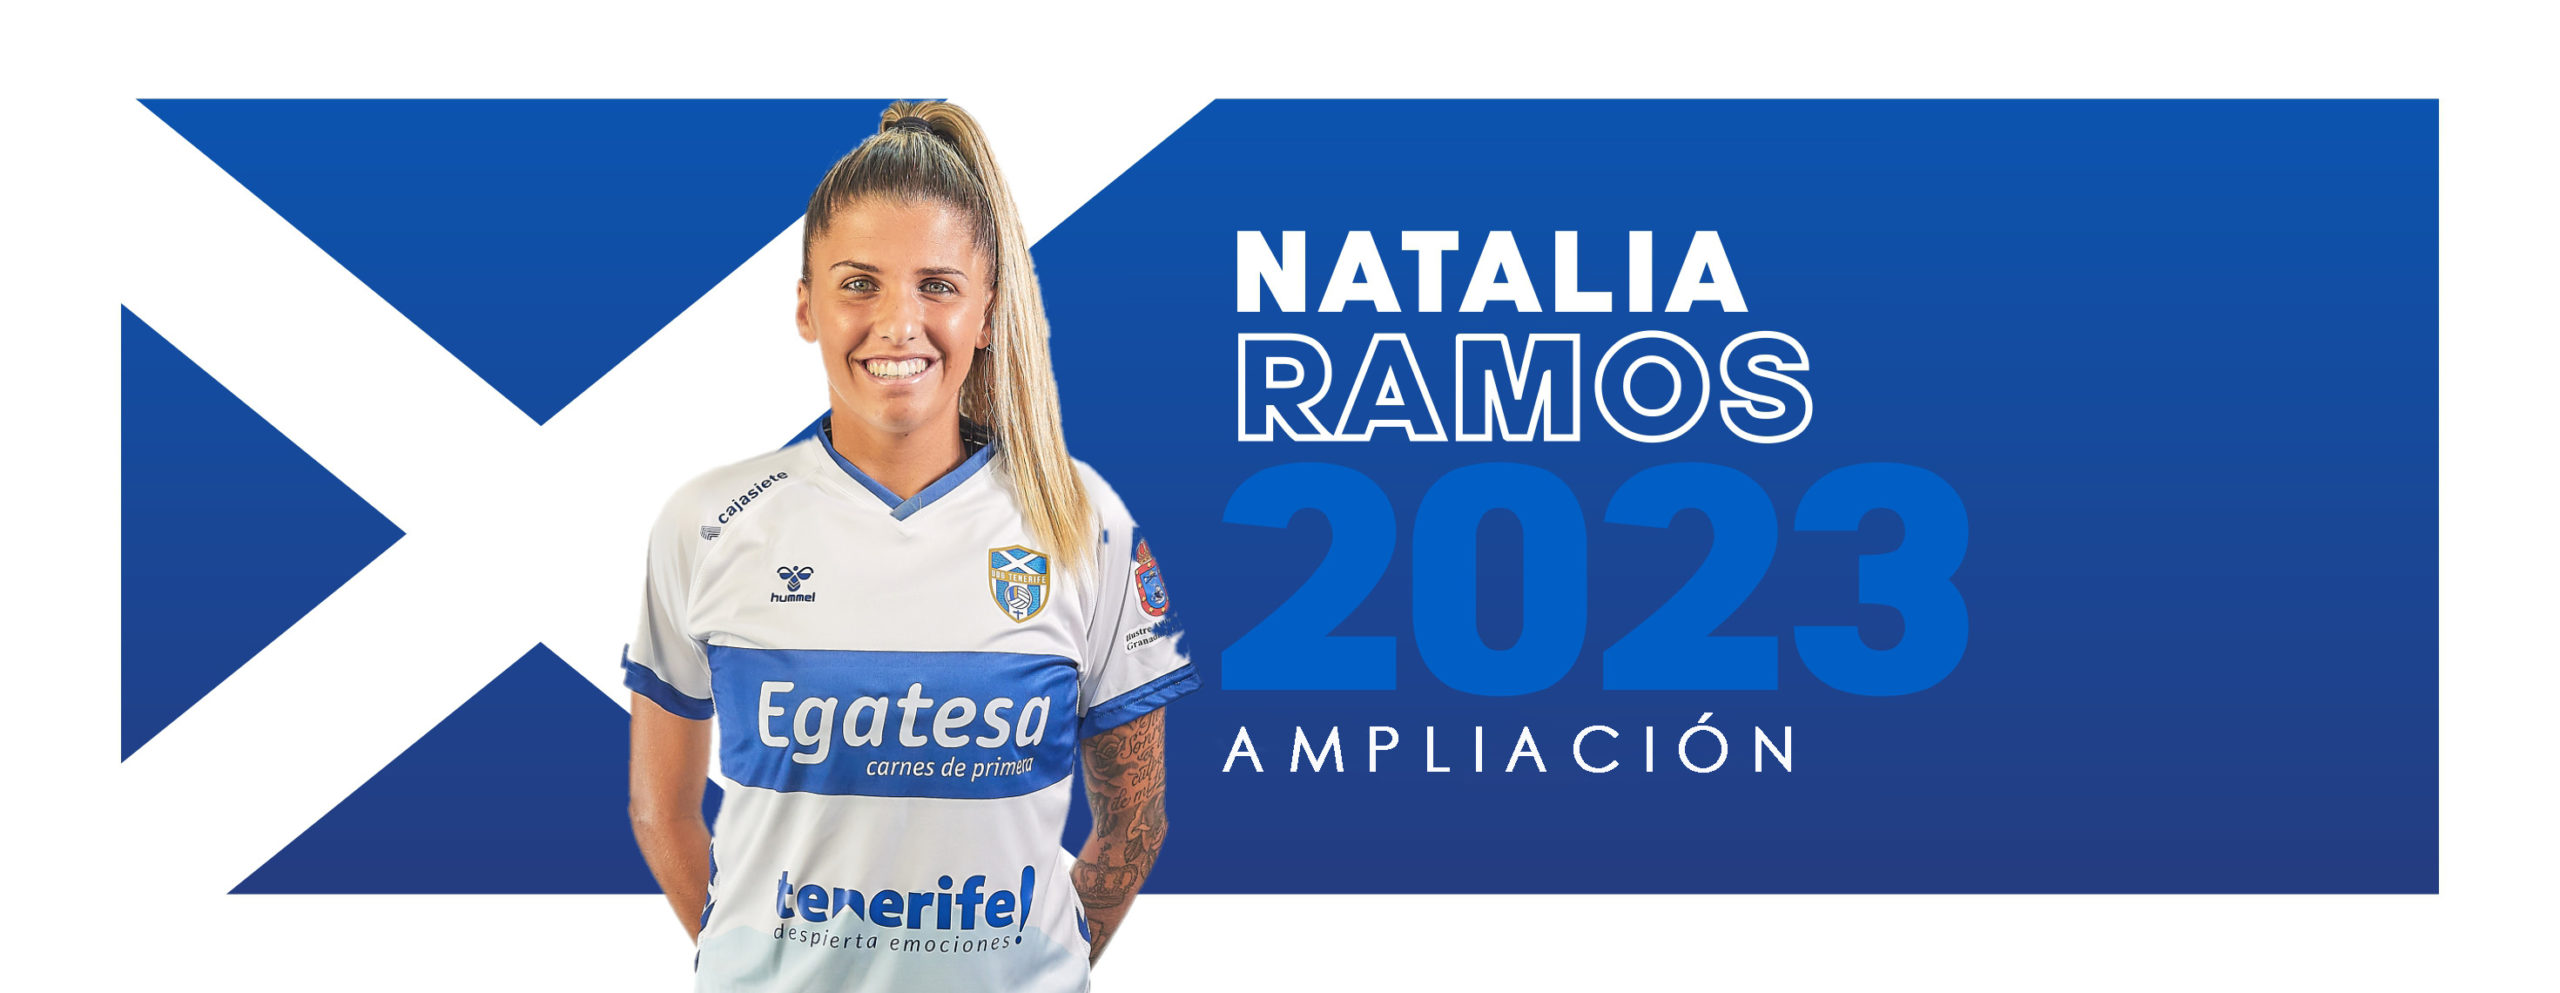 Natalia Ramos renueva con la UDG Tenerife Egatesa por un año más, hasta 2023